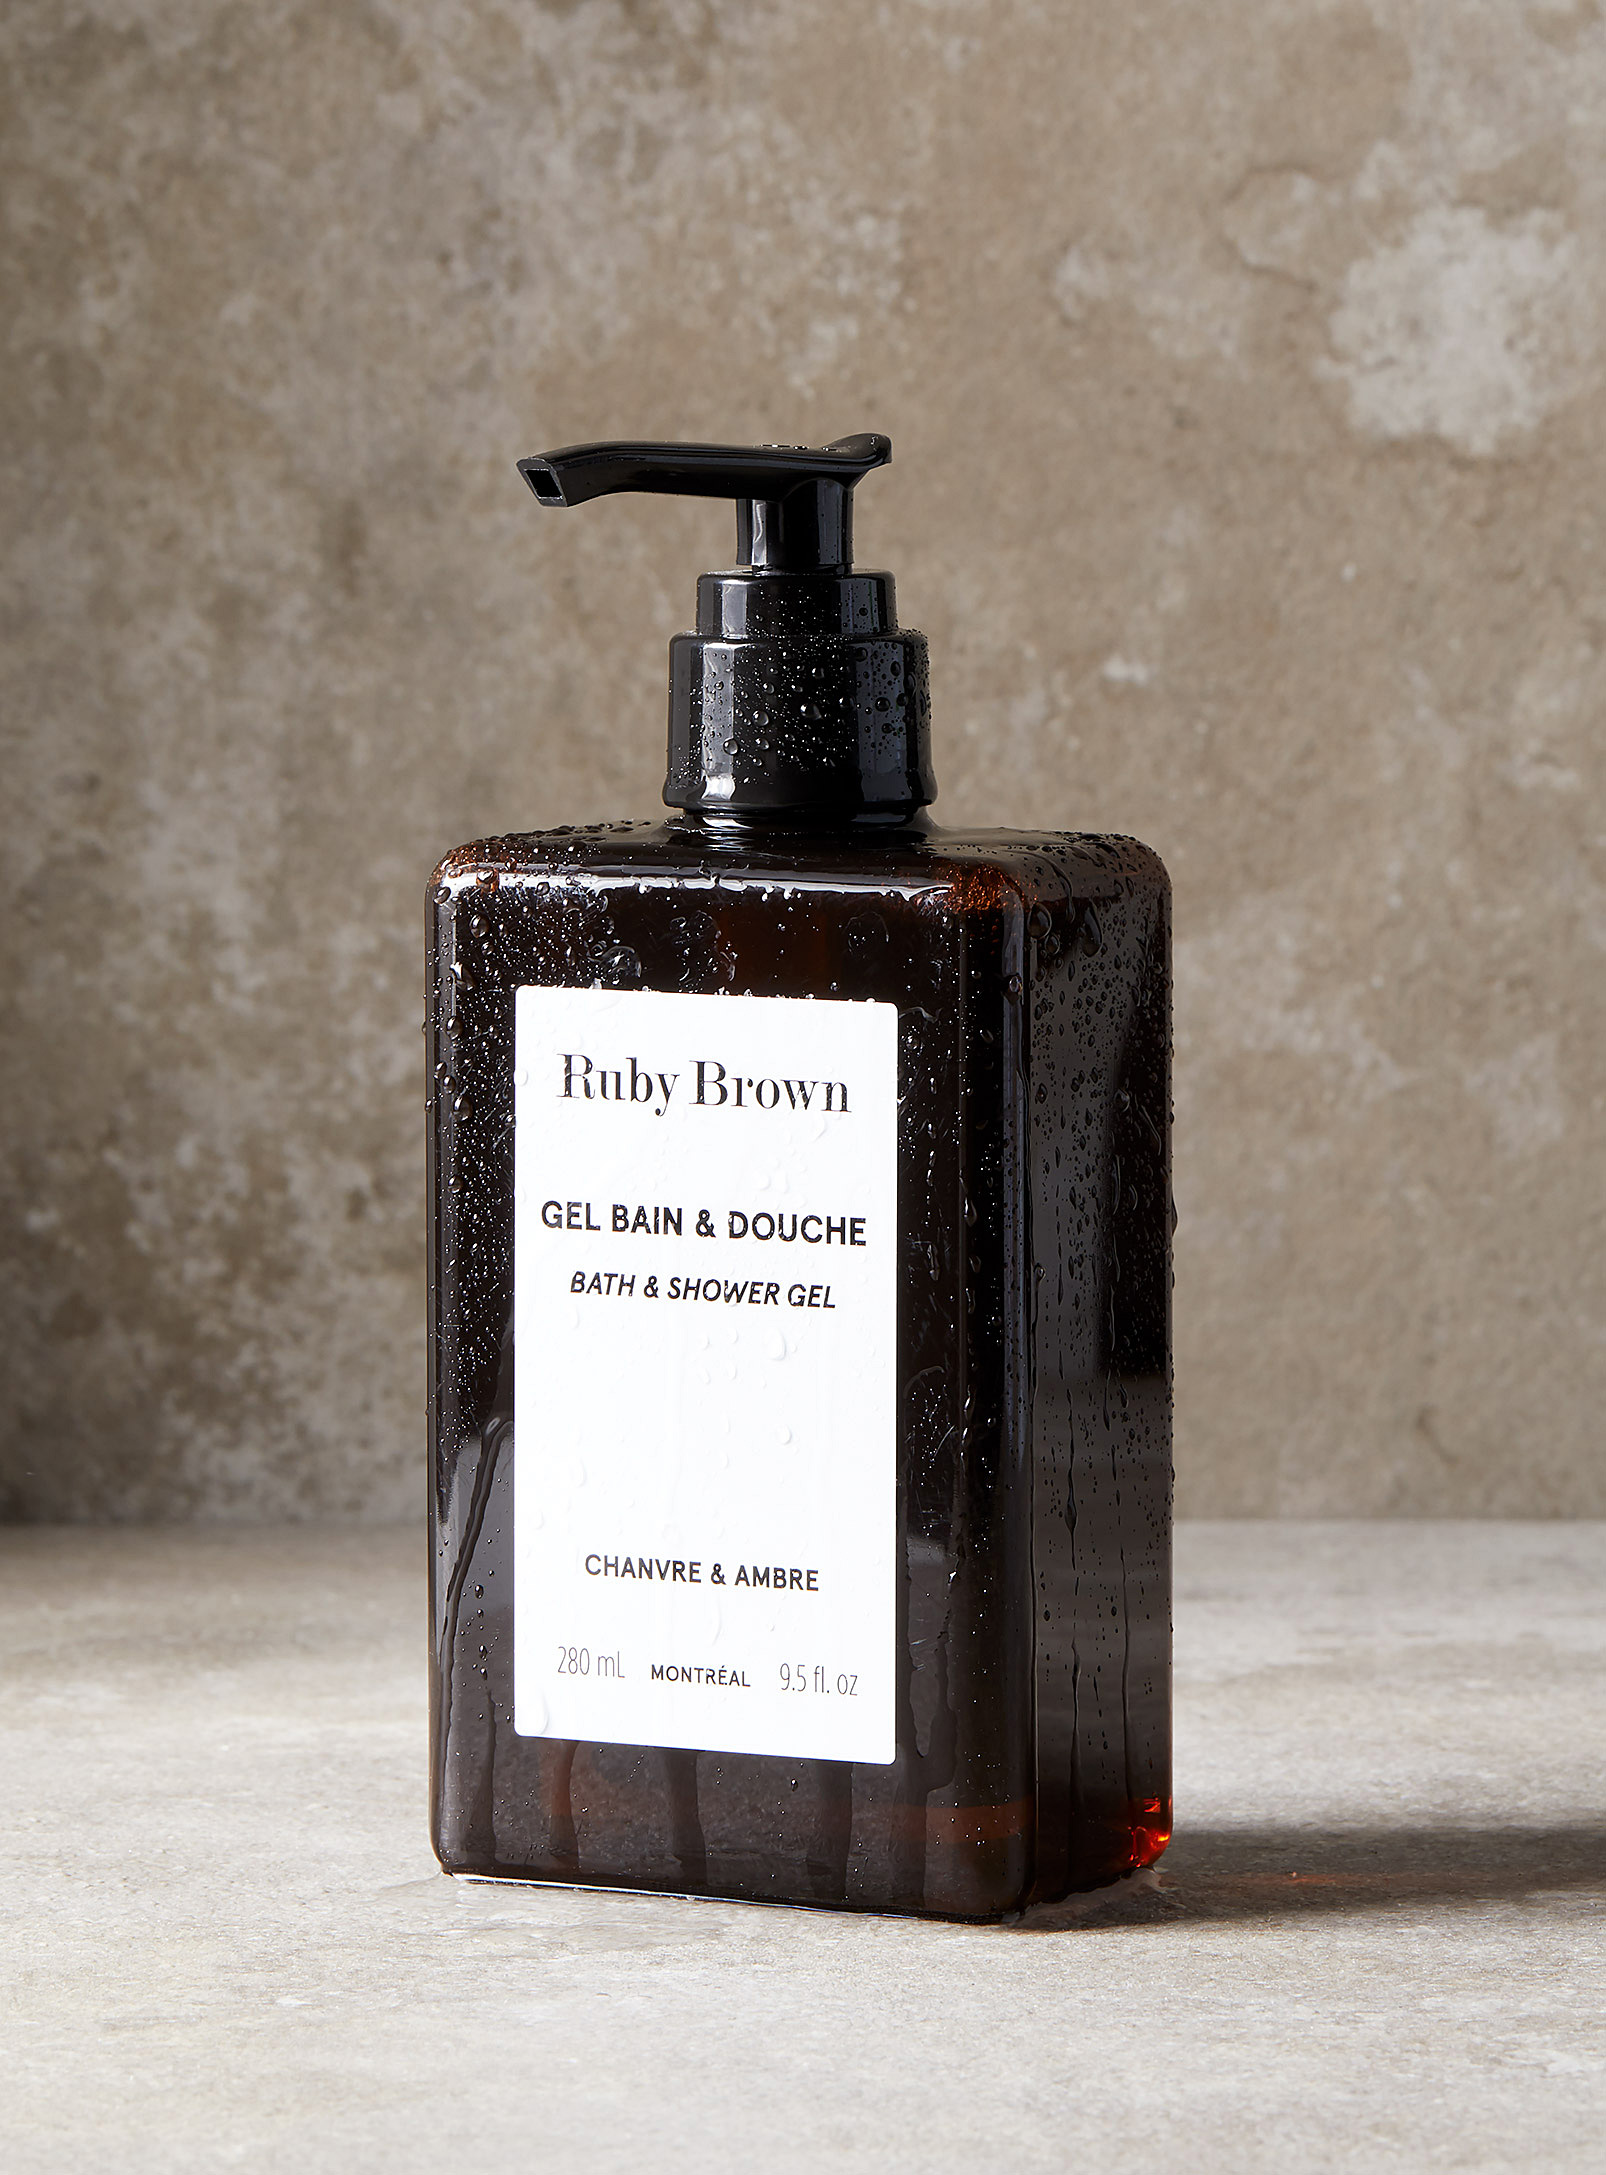 Ruby Brown - Le gel bain et douche chanvre et ambre